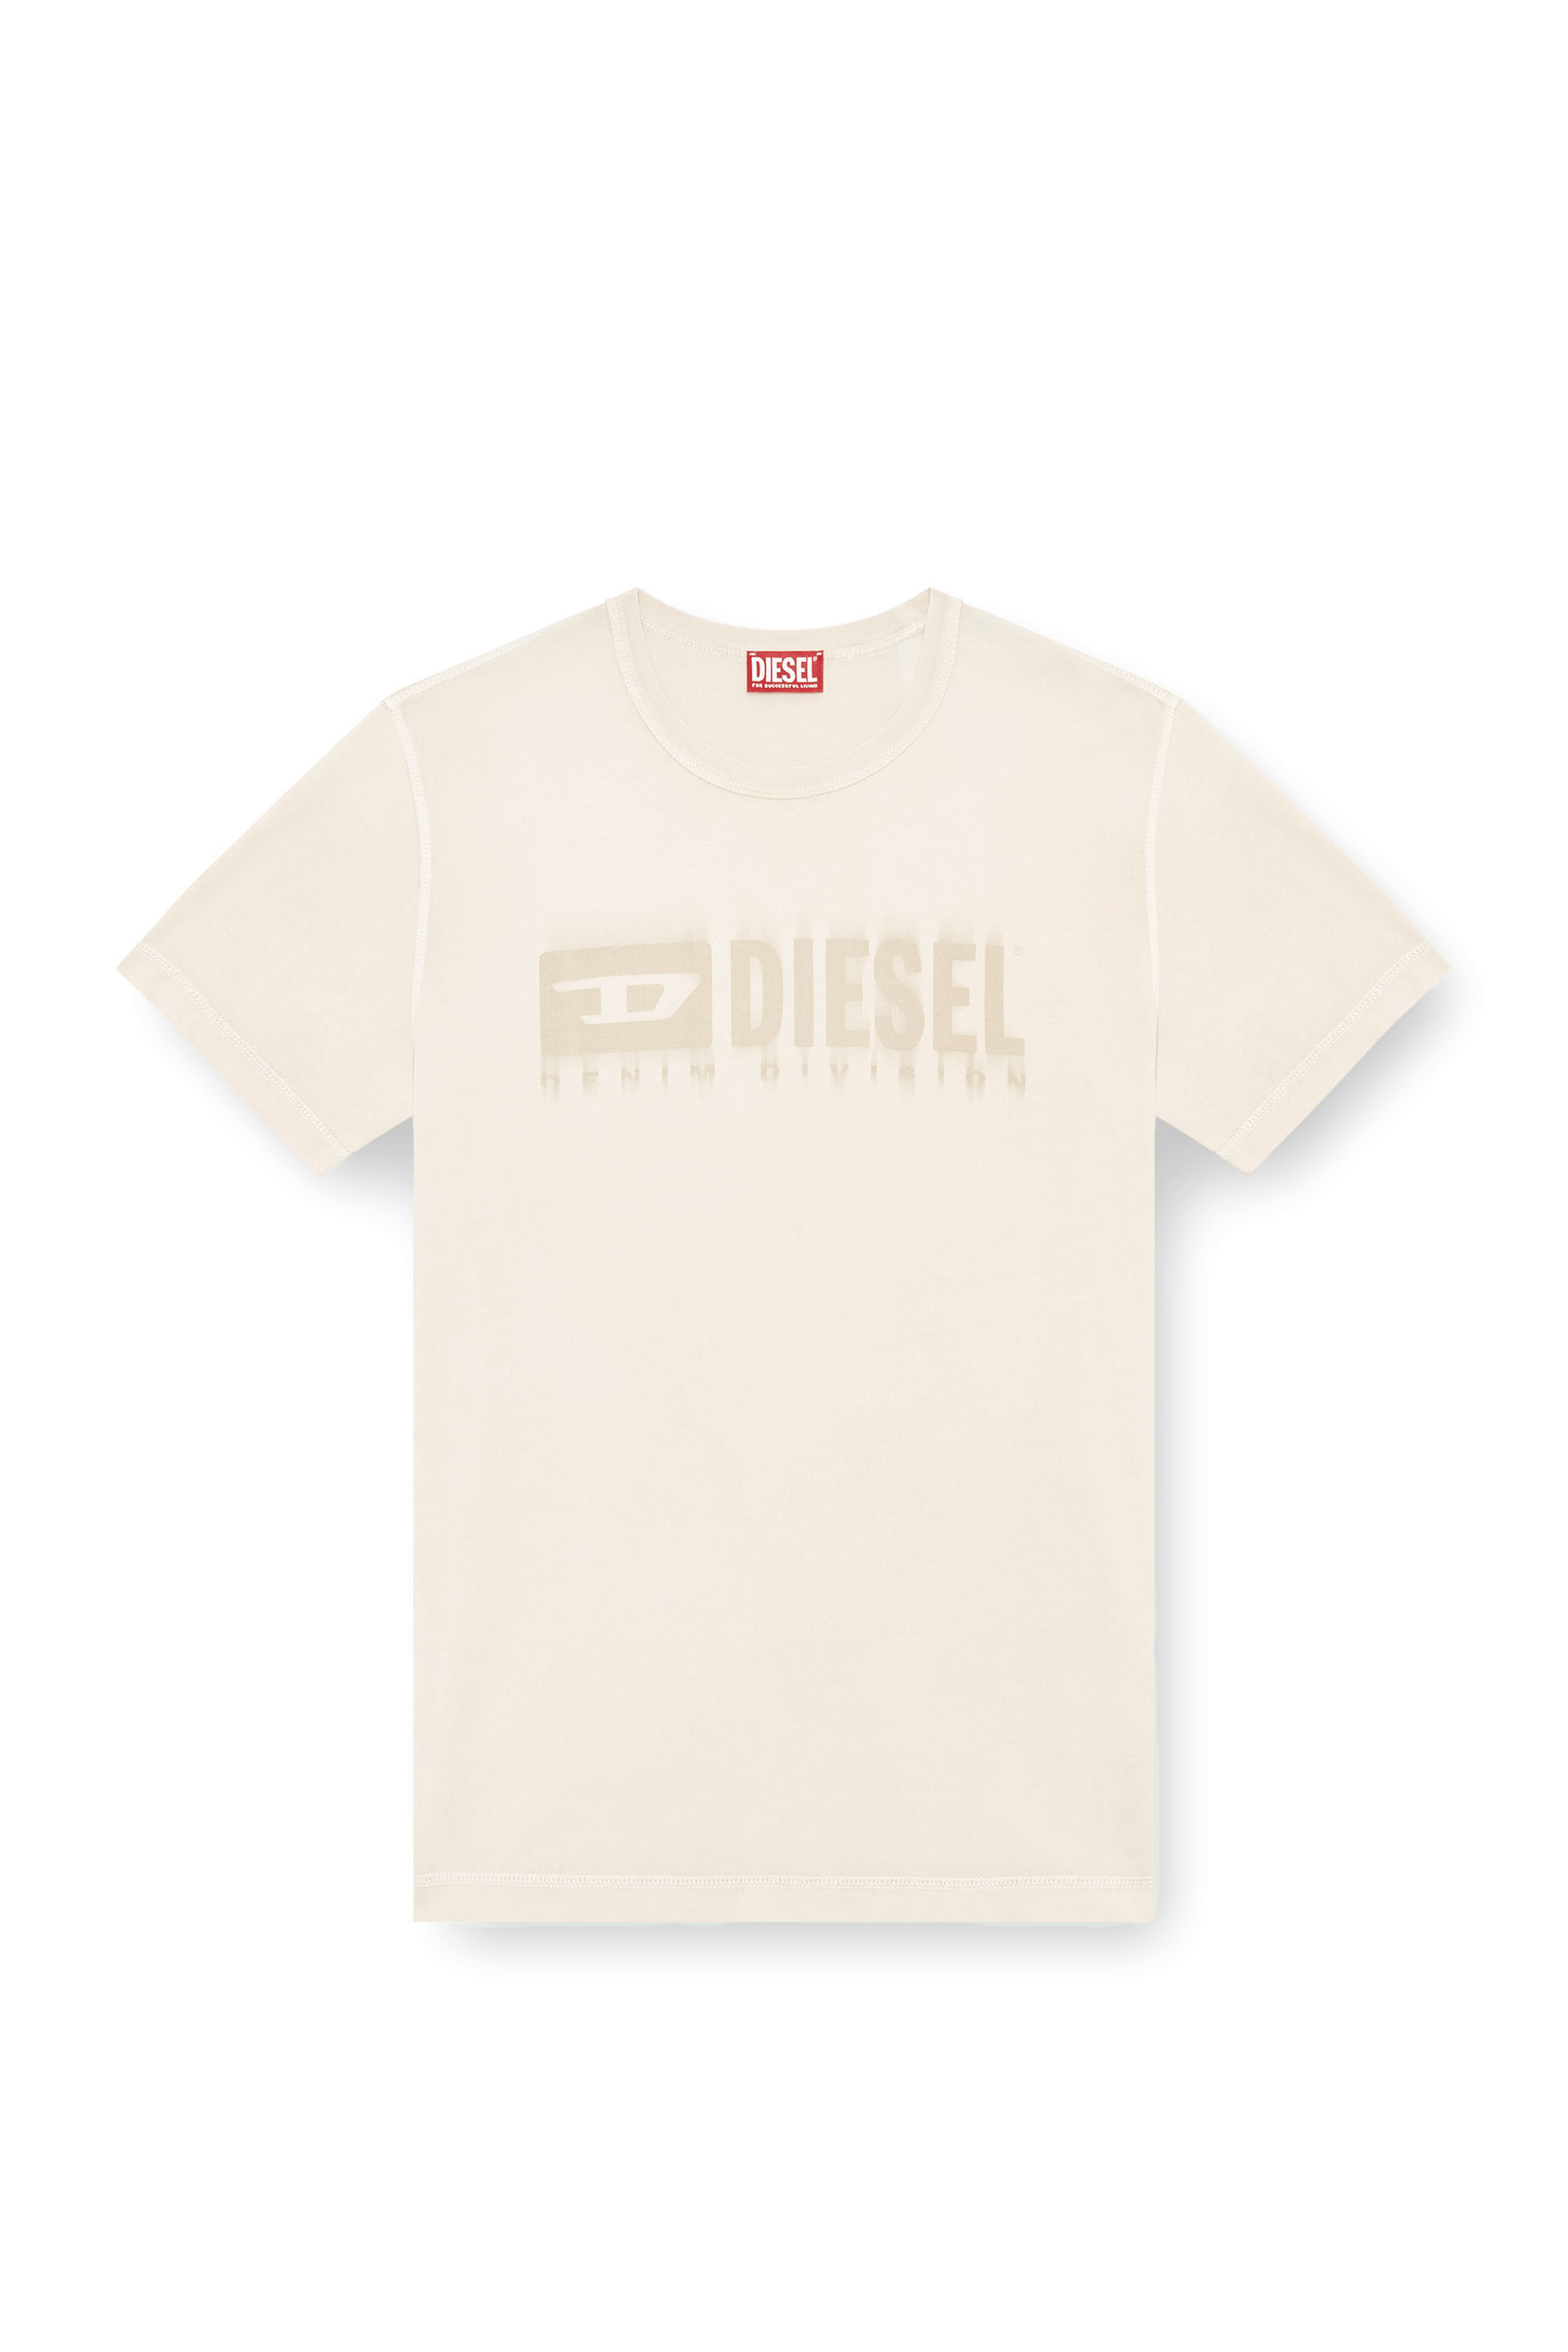 Diesel - T-ADJUST-K4, Hombre Camiseta con tratamiento desteñido por el sol in Beige - Image 2